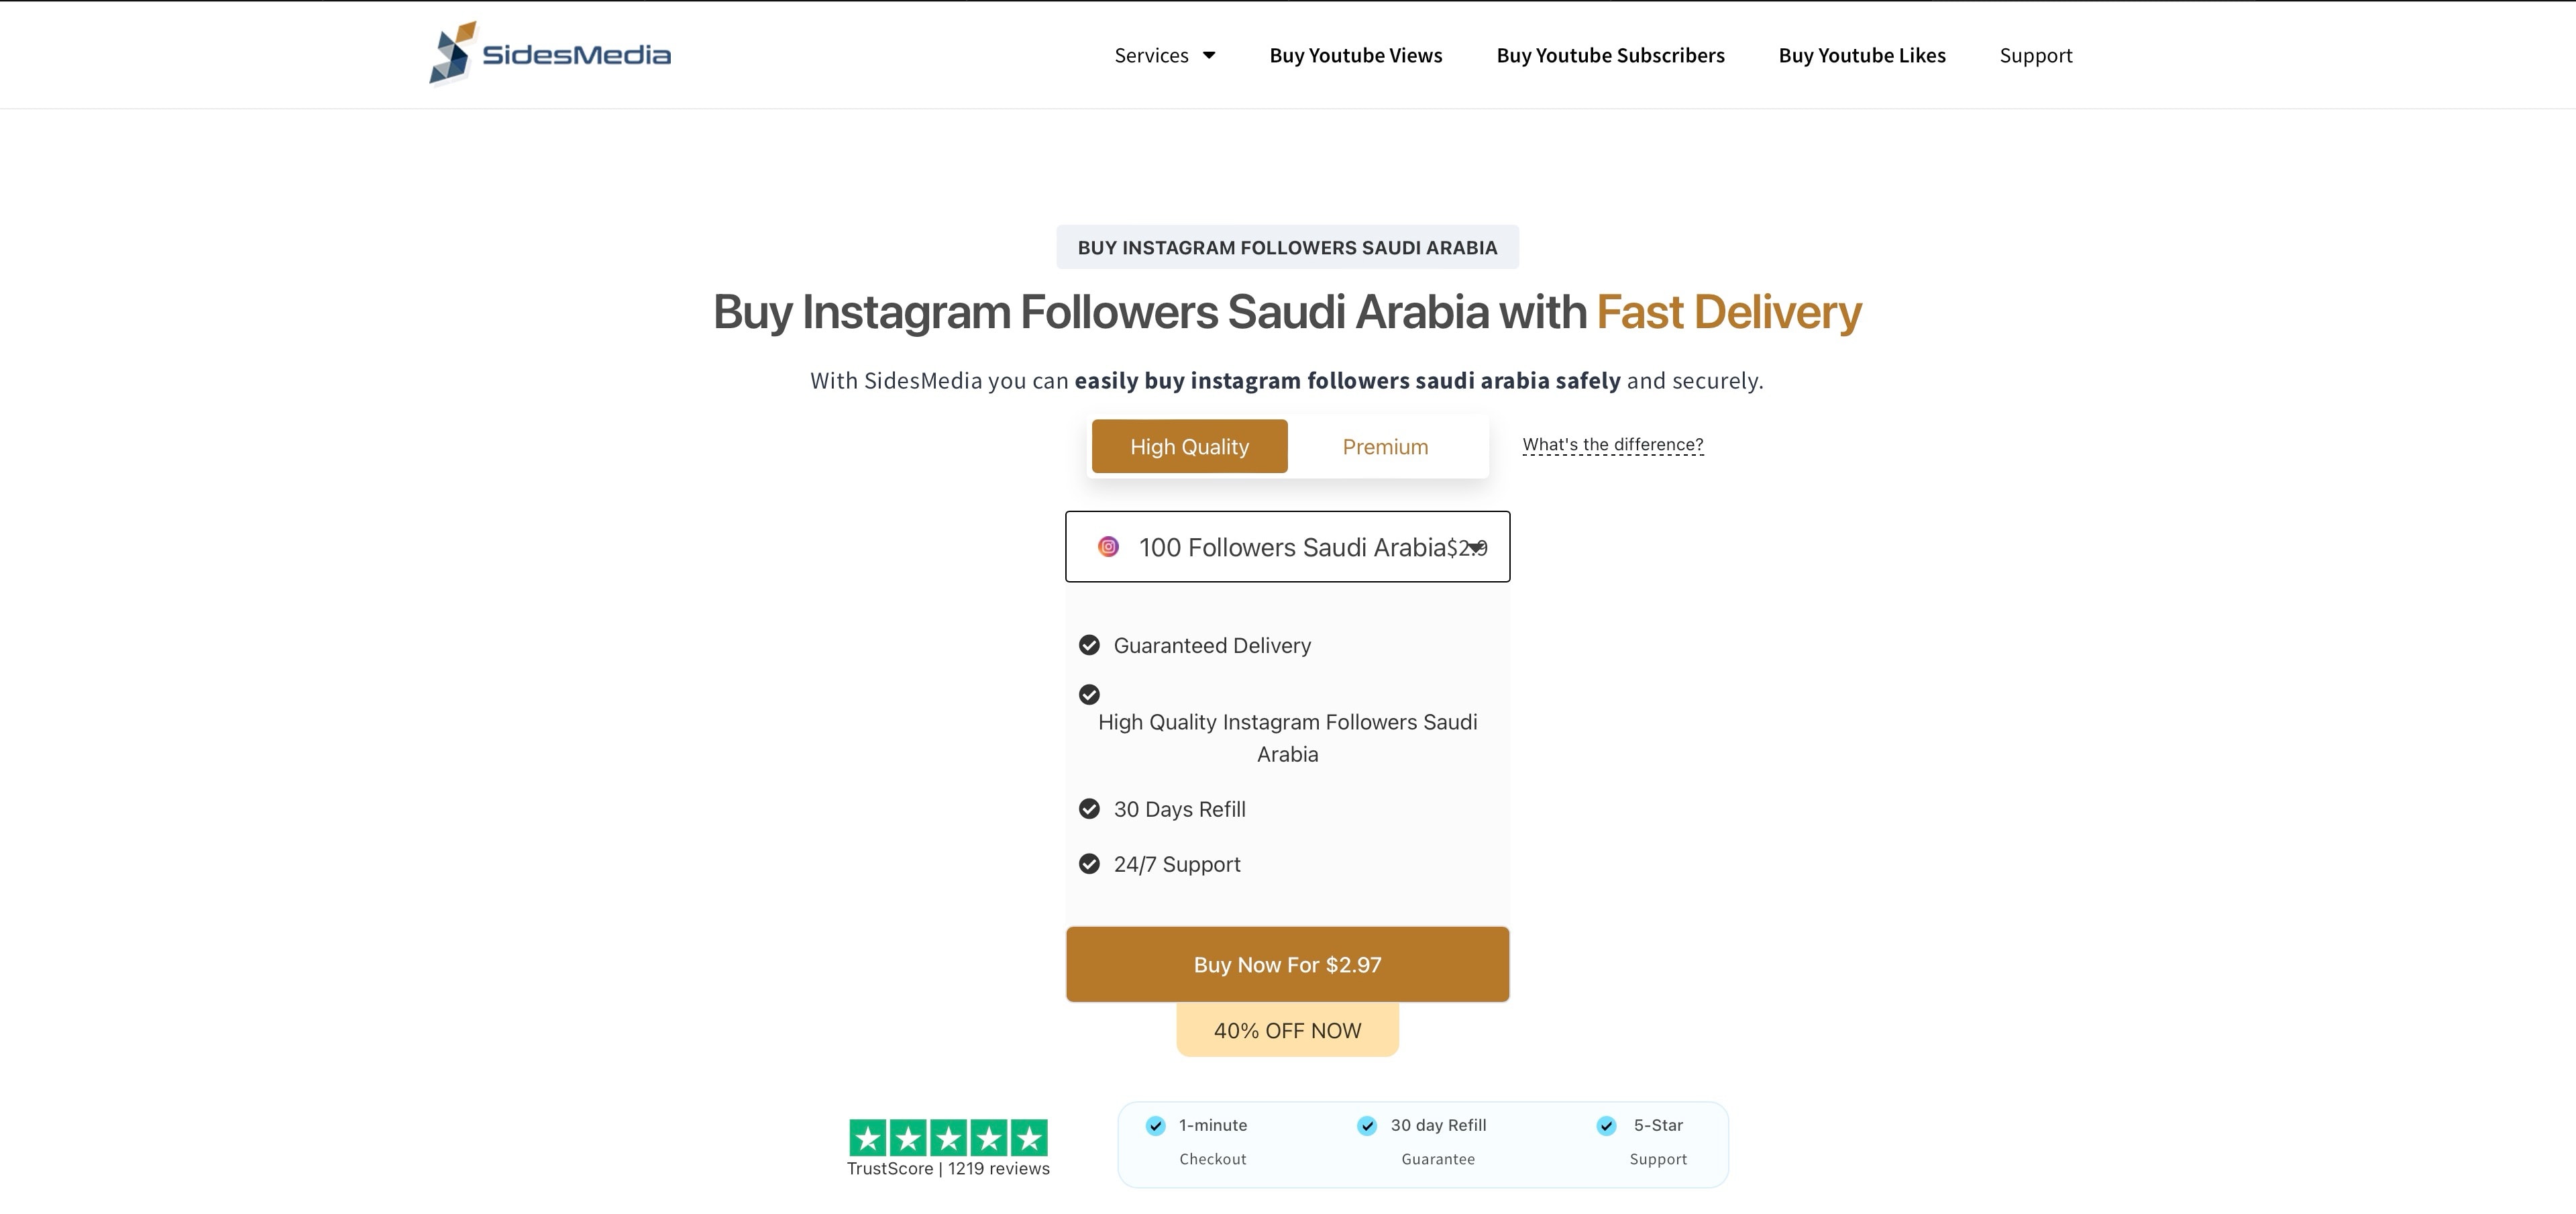 sidesmedia buy instagram followers saudi arabia page